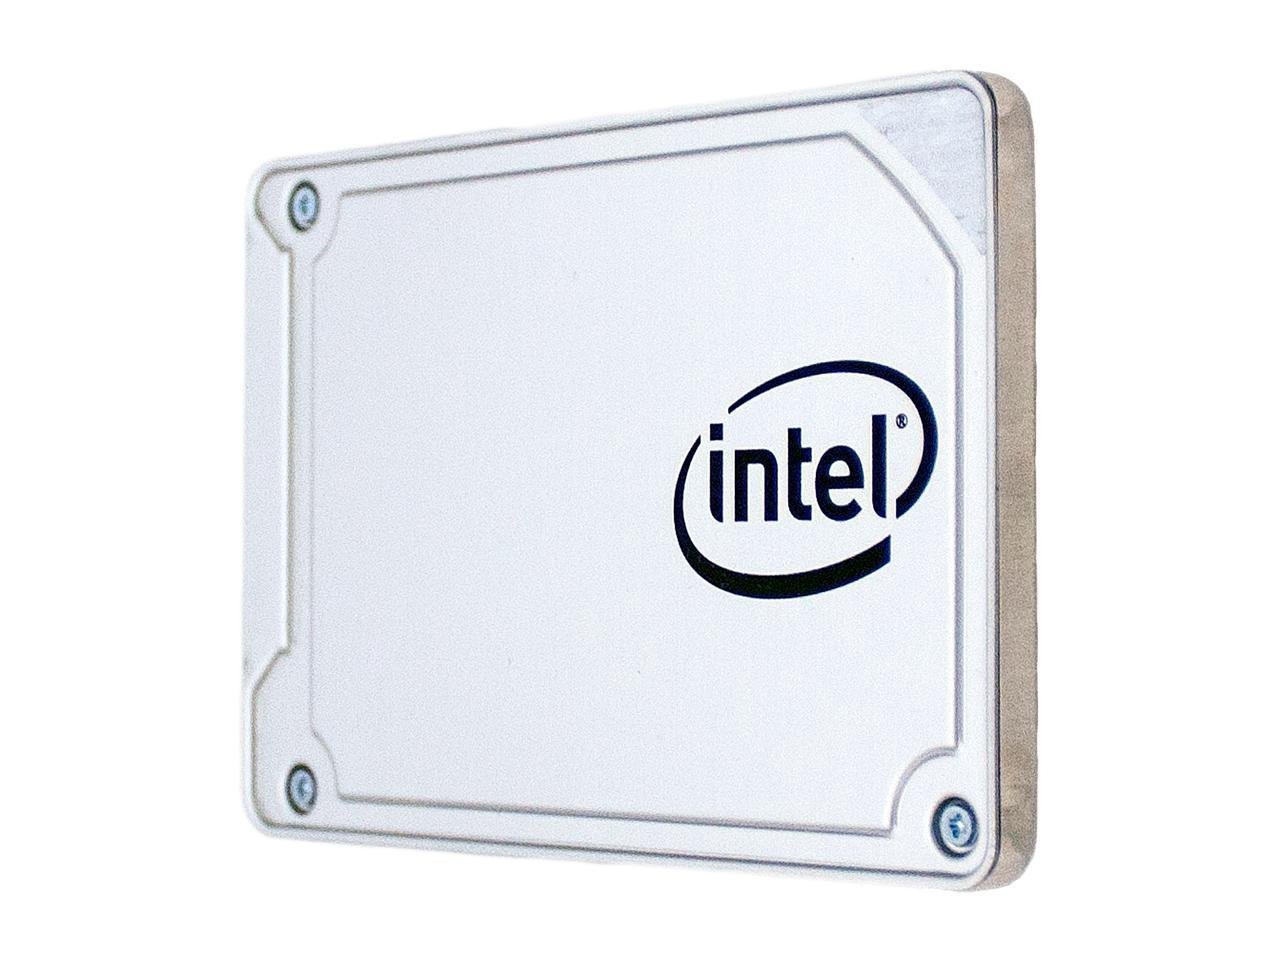 Hard Disk SSD Intel 545s Series 512GB 2.5 title=Hard Disk SSD Intel 545s Series 512GB 2.5